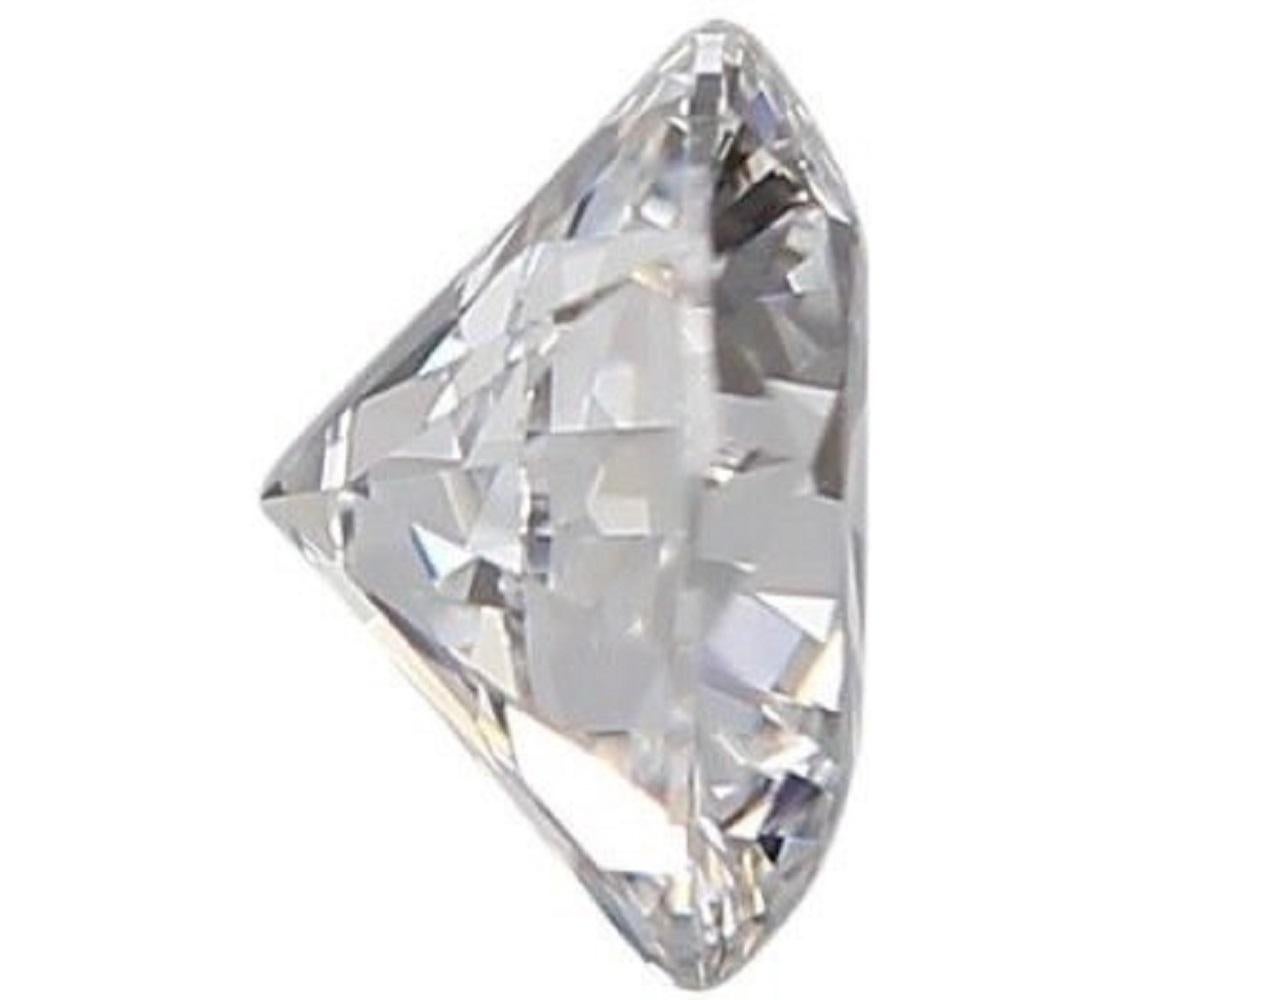 1 funkelnder natürlicher runder Diamant im Brillantschliff von 0,9 Karat I VVS1 mit sehr gutem Schliff. Dieser Diamant wird mit GIA-Zertifikat und Laserbeschriftungsnummer geliefert.

SKU: C-DSPV-167351-3
GIA 6451226991